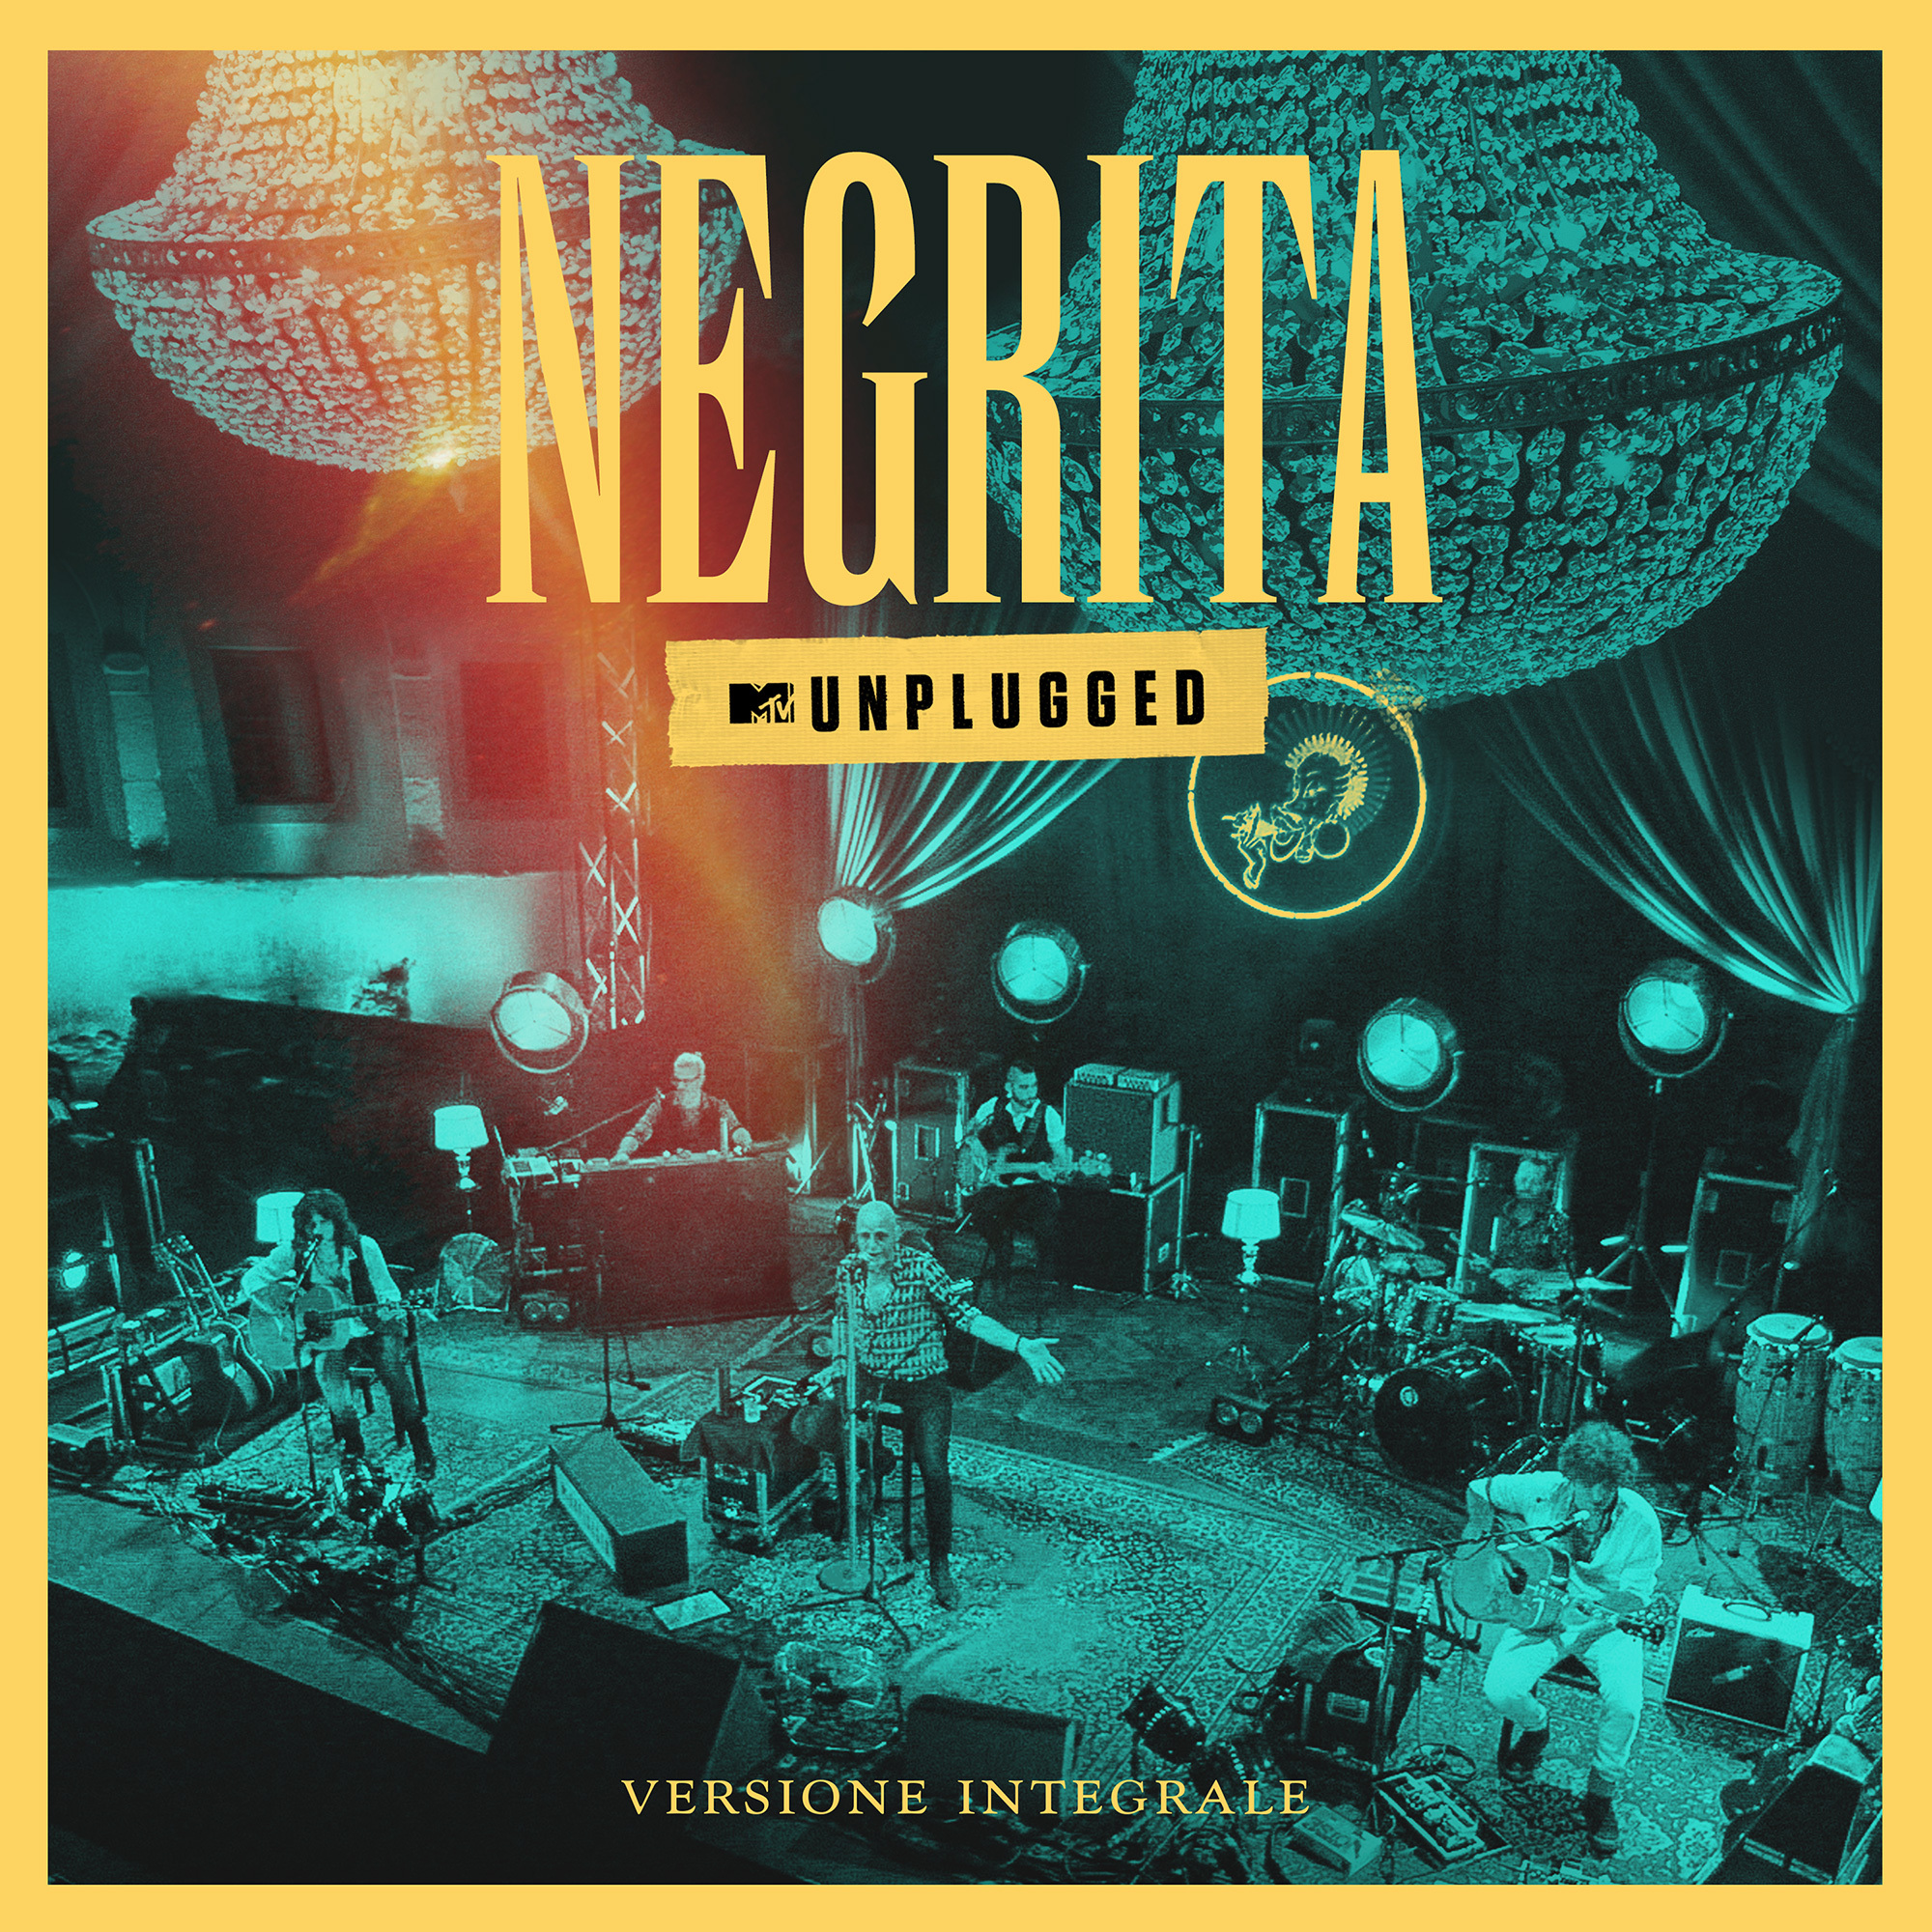 I Negrita ristampano l’album MTV Unplugged in versione integrale